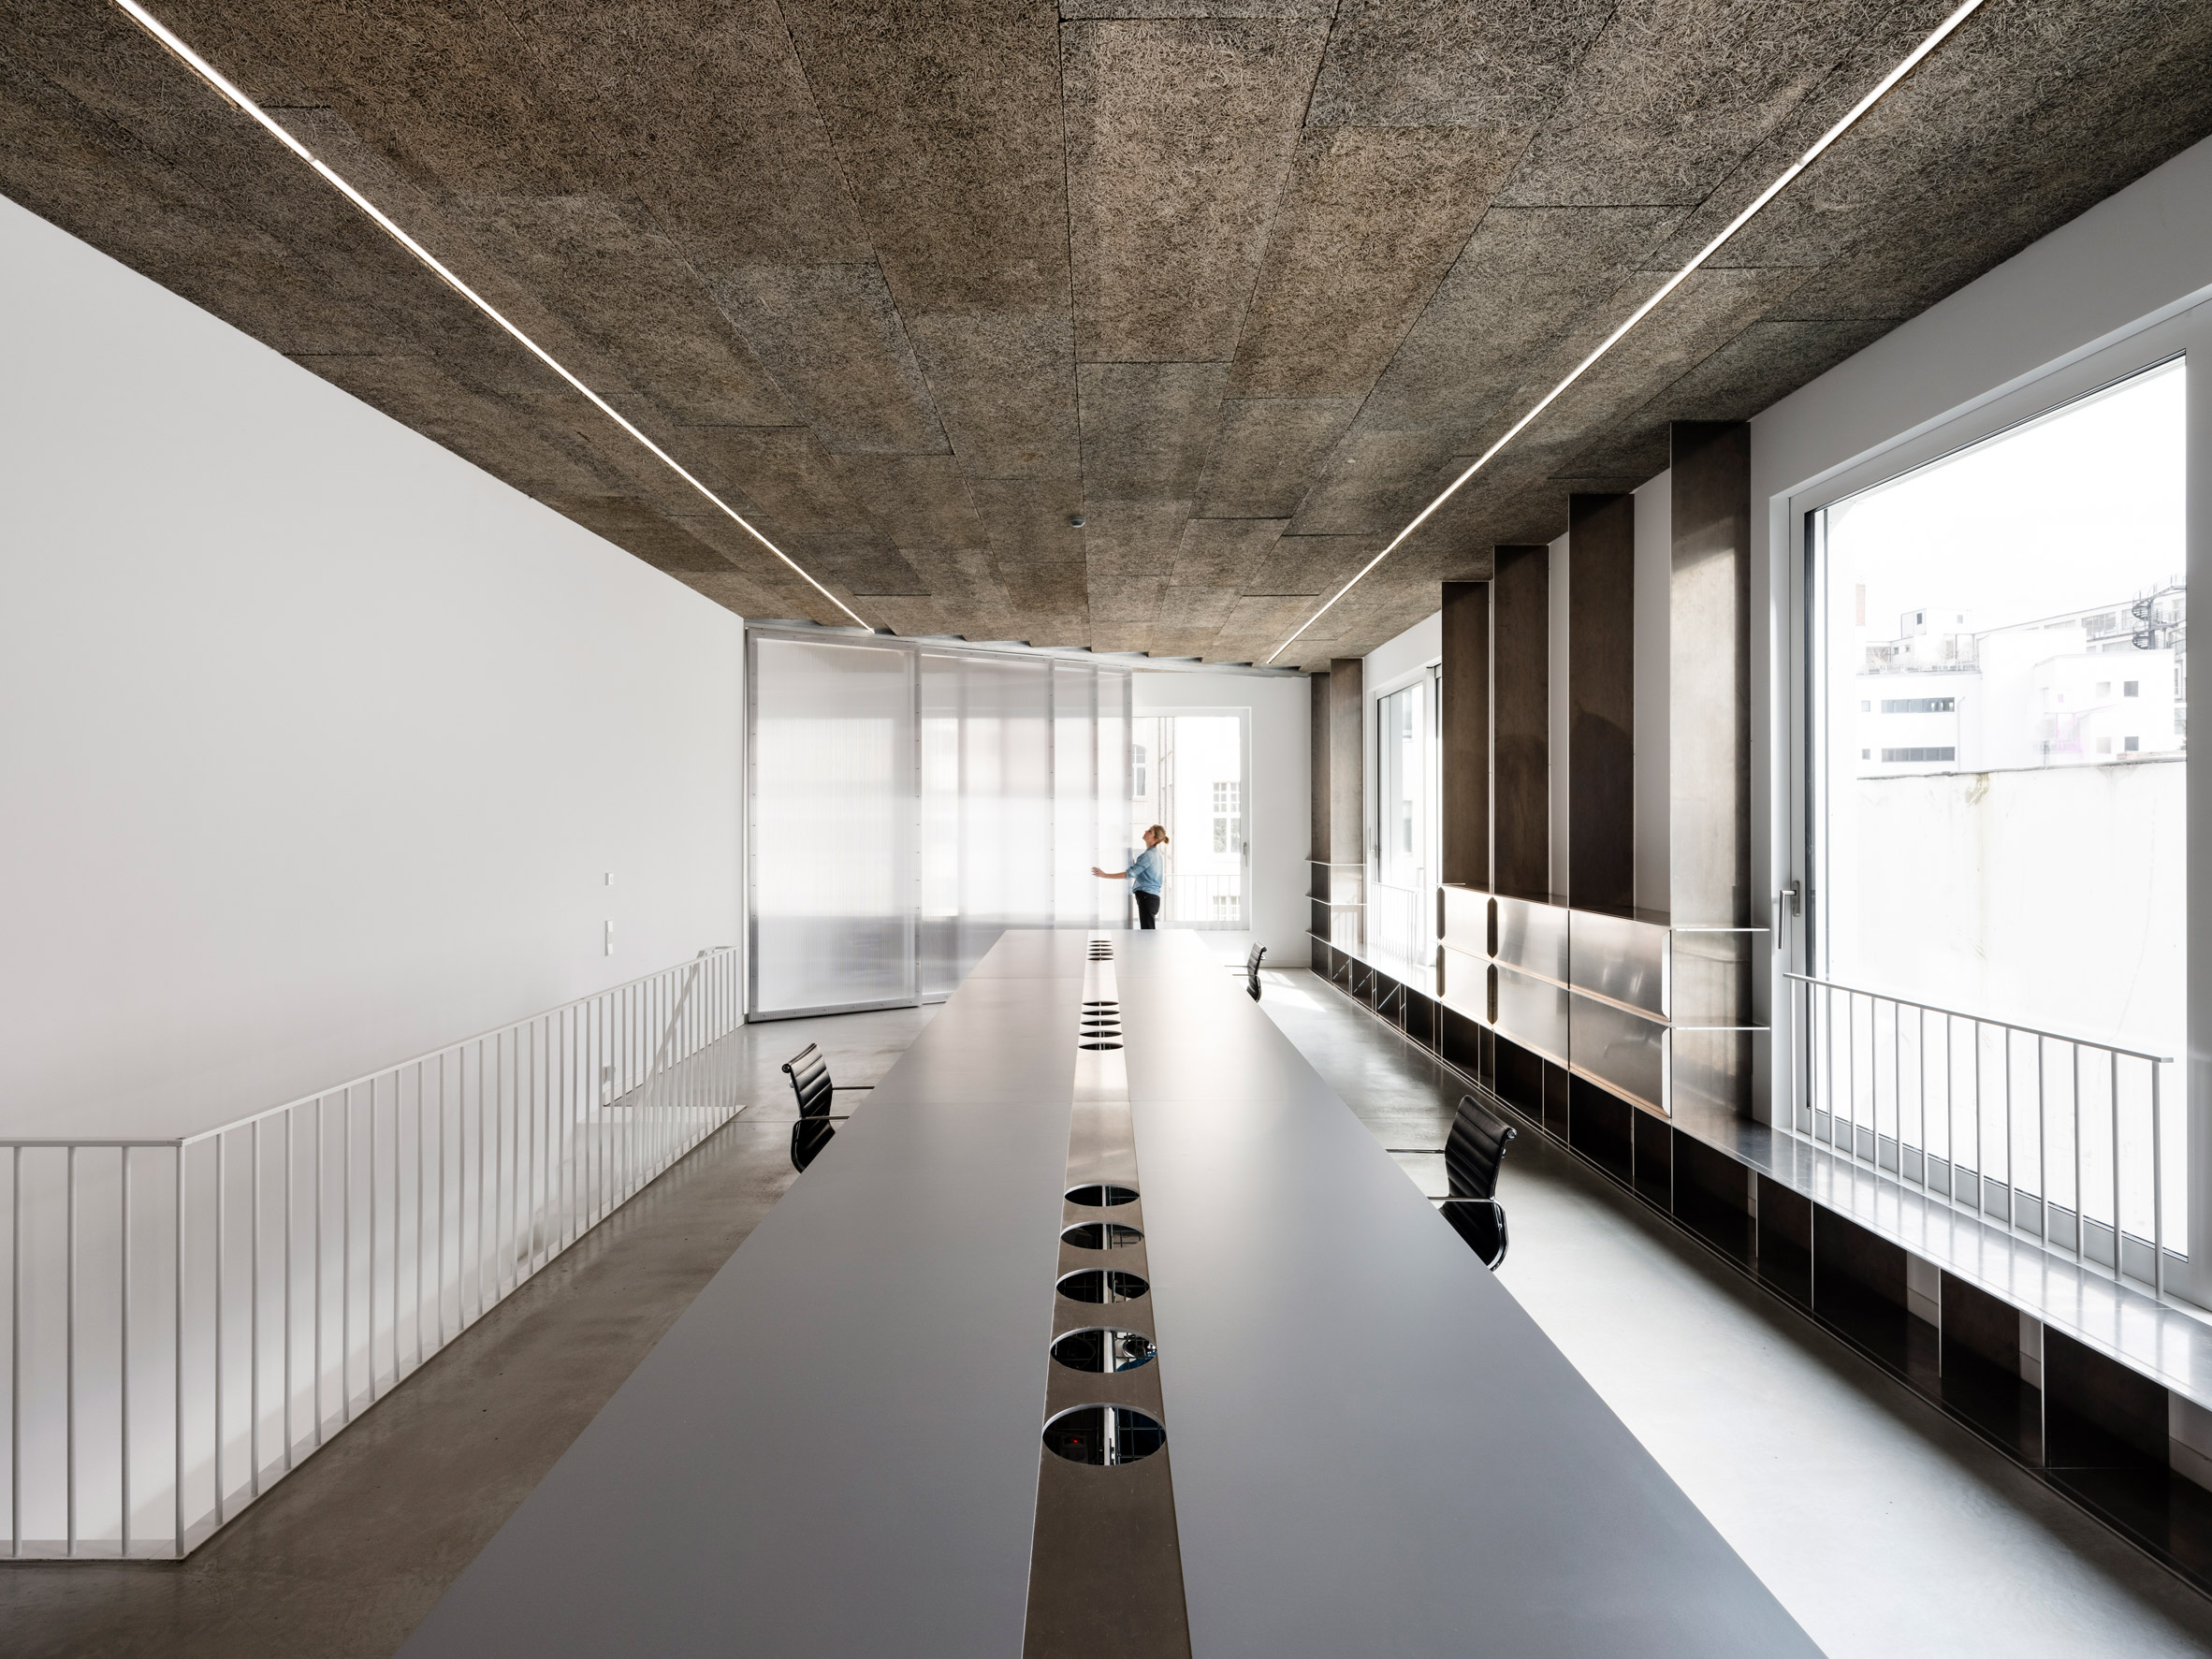 BAM office in Berlin designed by Gonzalez Haase AAS